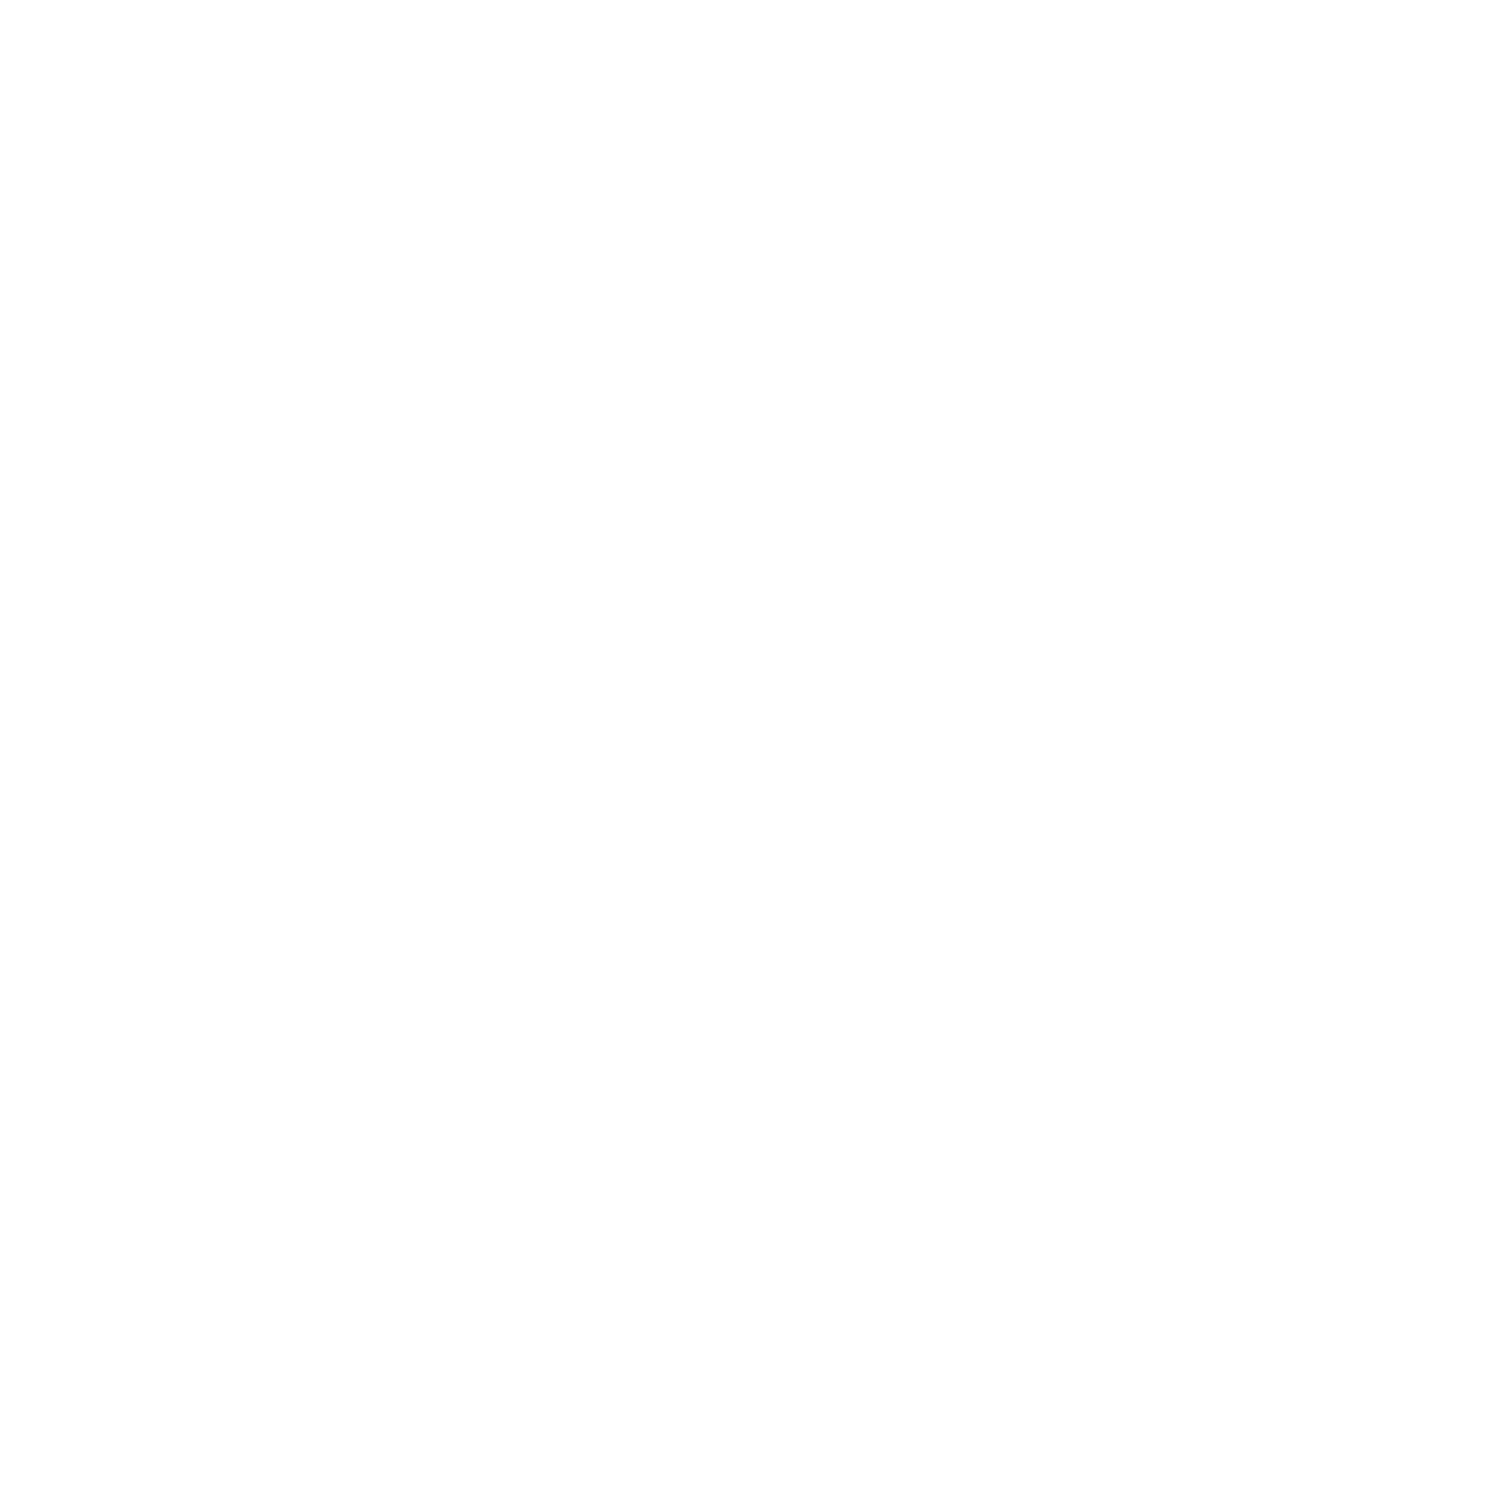 Grant Skeldon